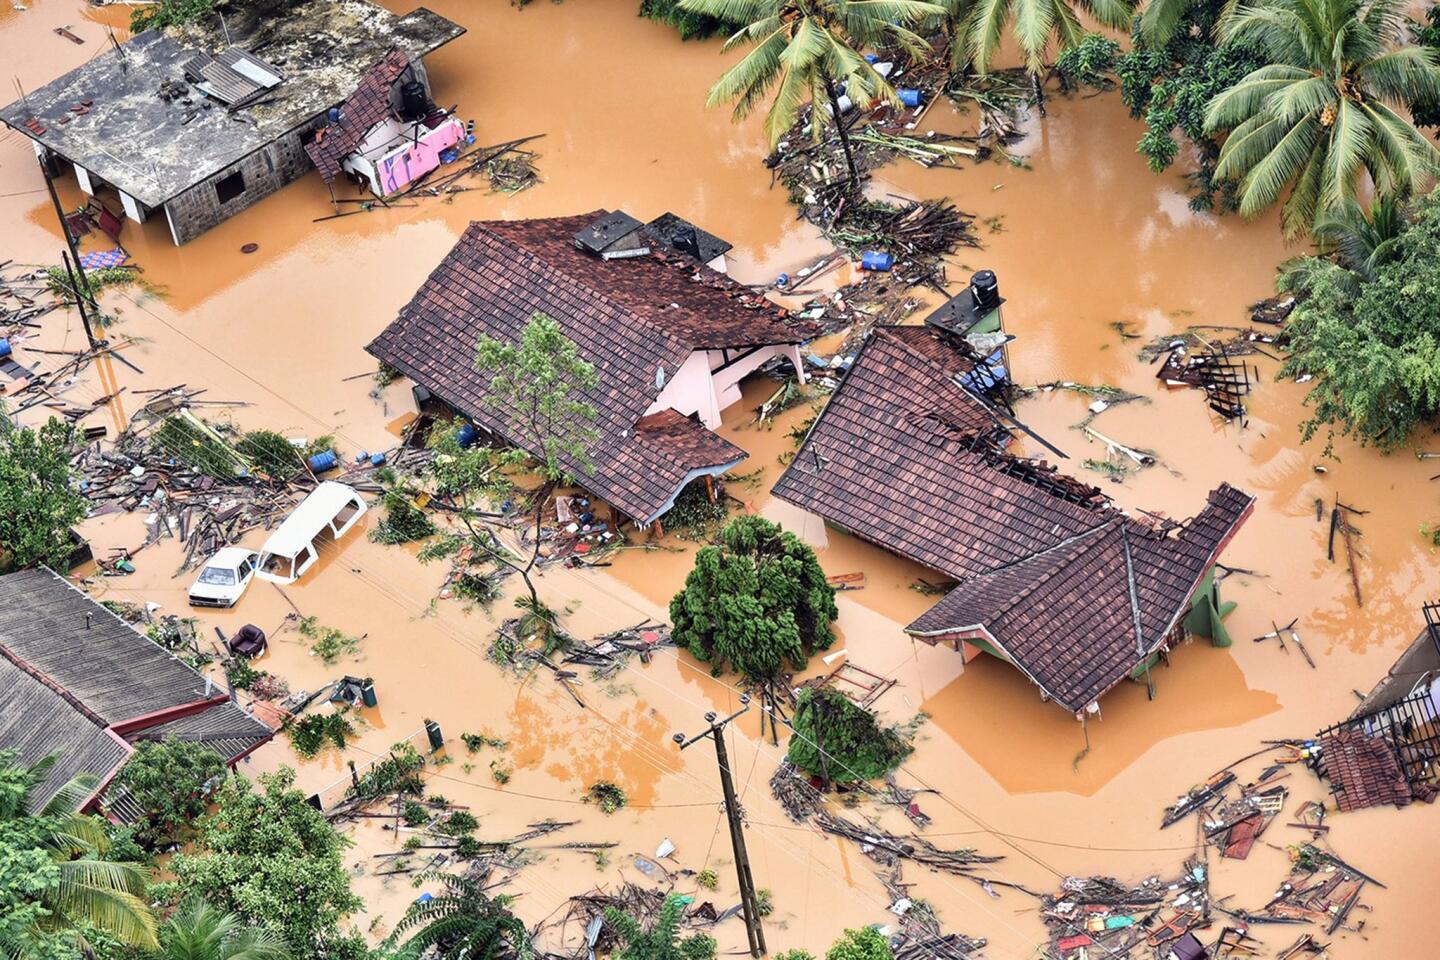 Sri Lanka floods